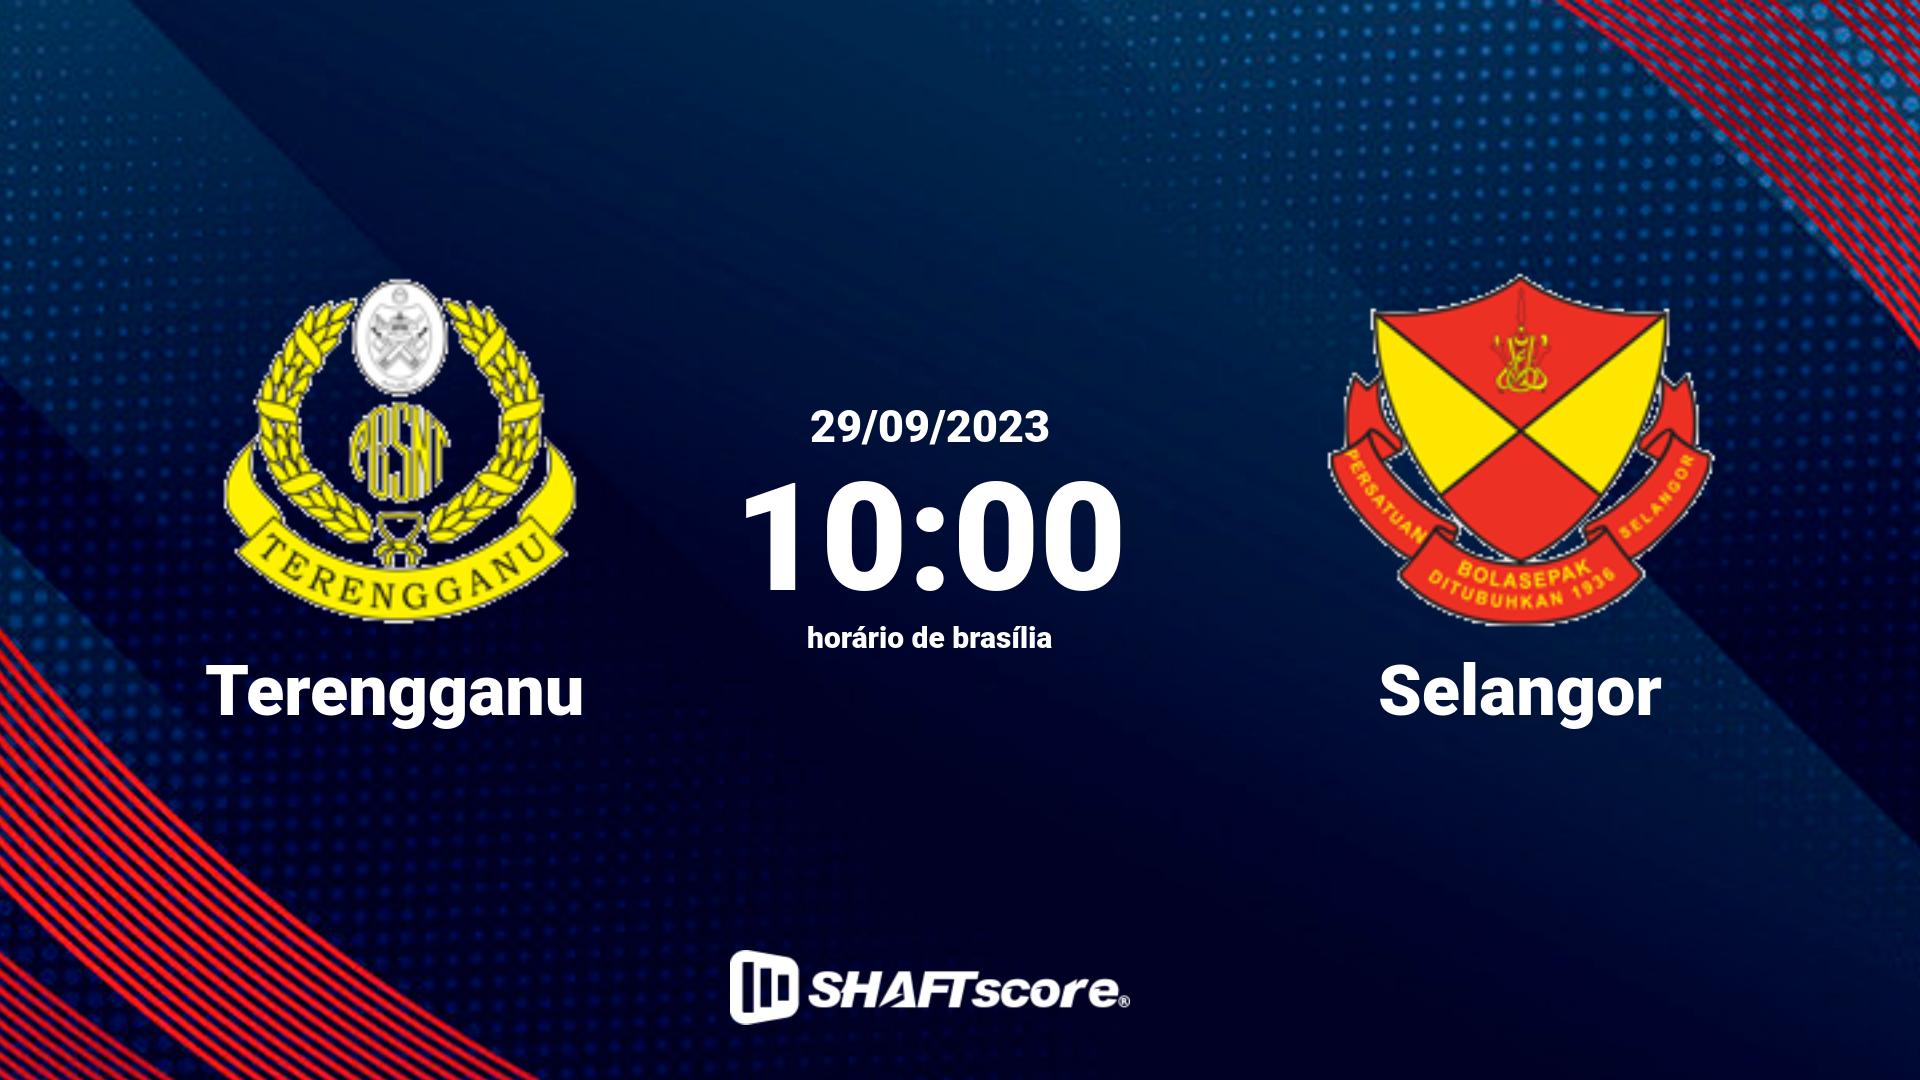 Estatísticas do jogo Terengganu vs Selangor 29.09 10:00